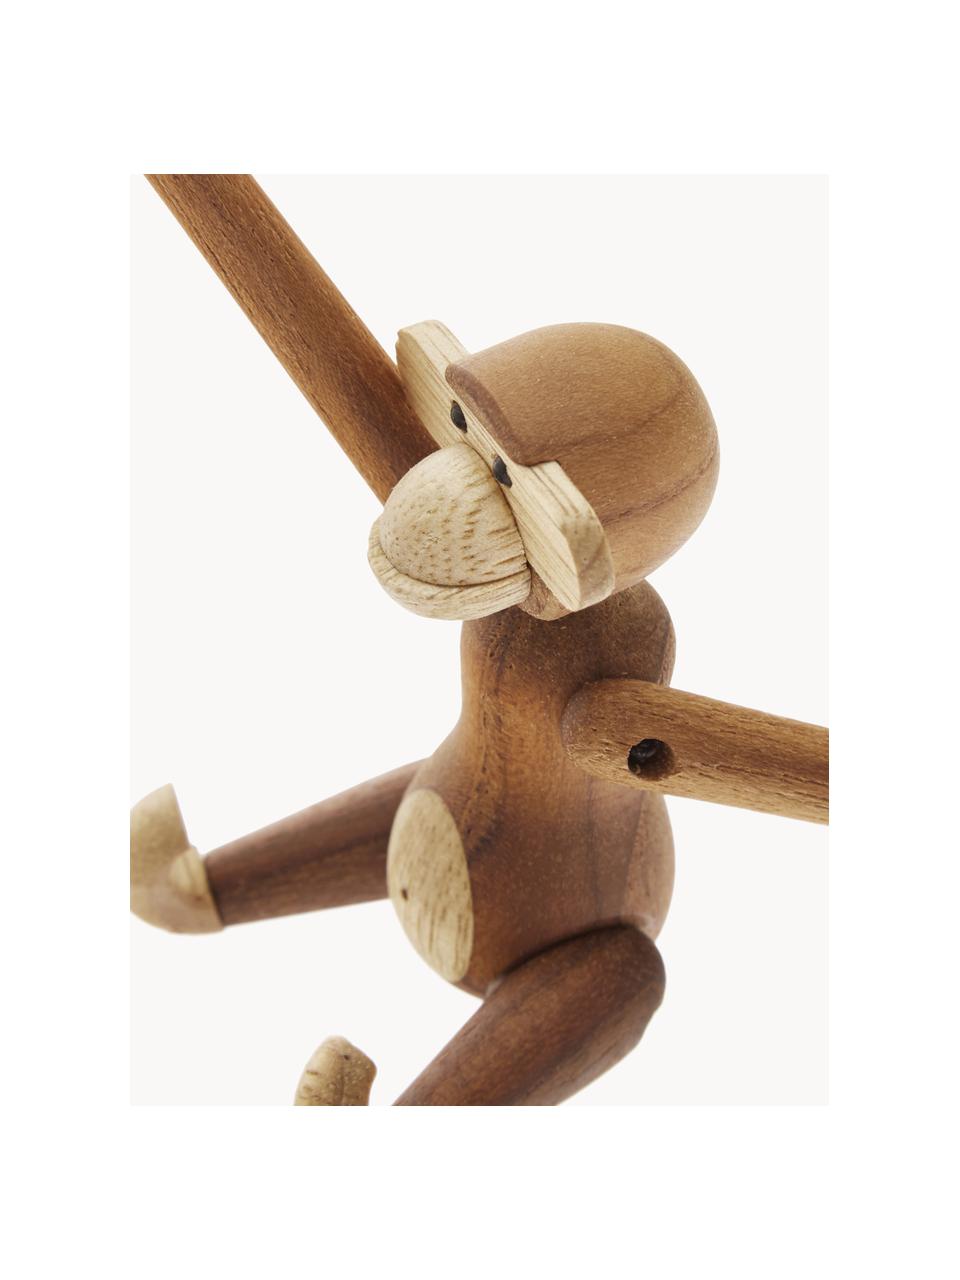 Dekorácia z tíkového dreva Monkey, V 10 cm, Tíkové a limbové drevo, lakované

Tento produkt je vyrobený z trvalo udržateľného dreva s certifikátom FSC®., Tíkové drevo, limba drevo, Š 10 x V 10 cm